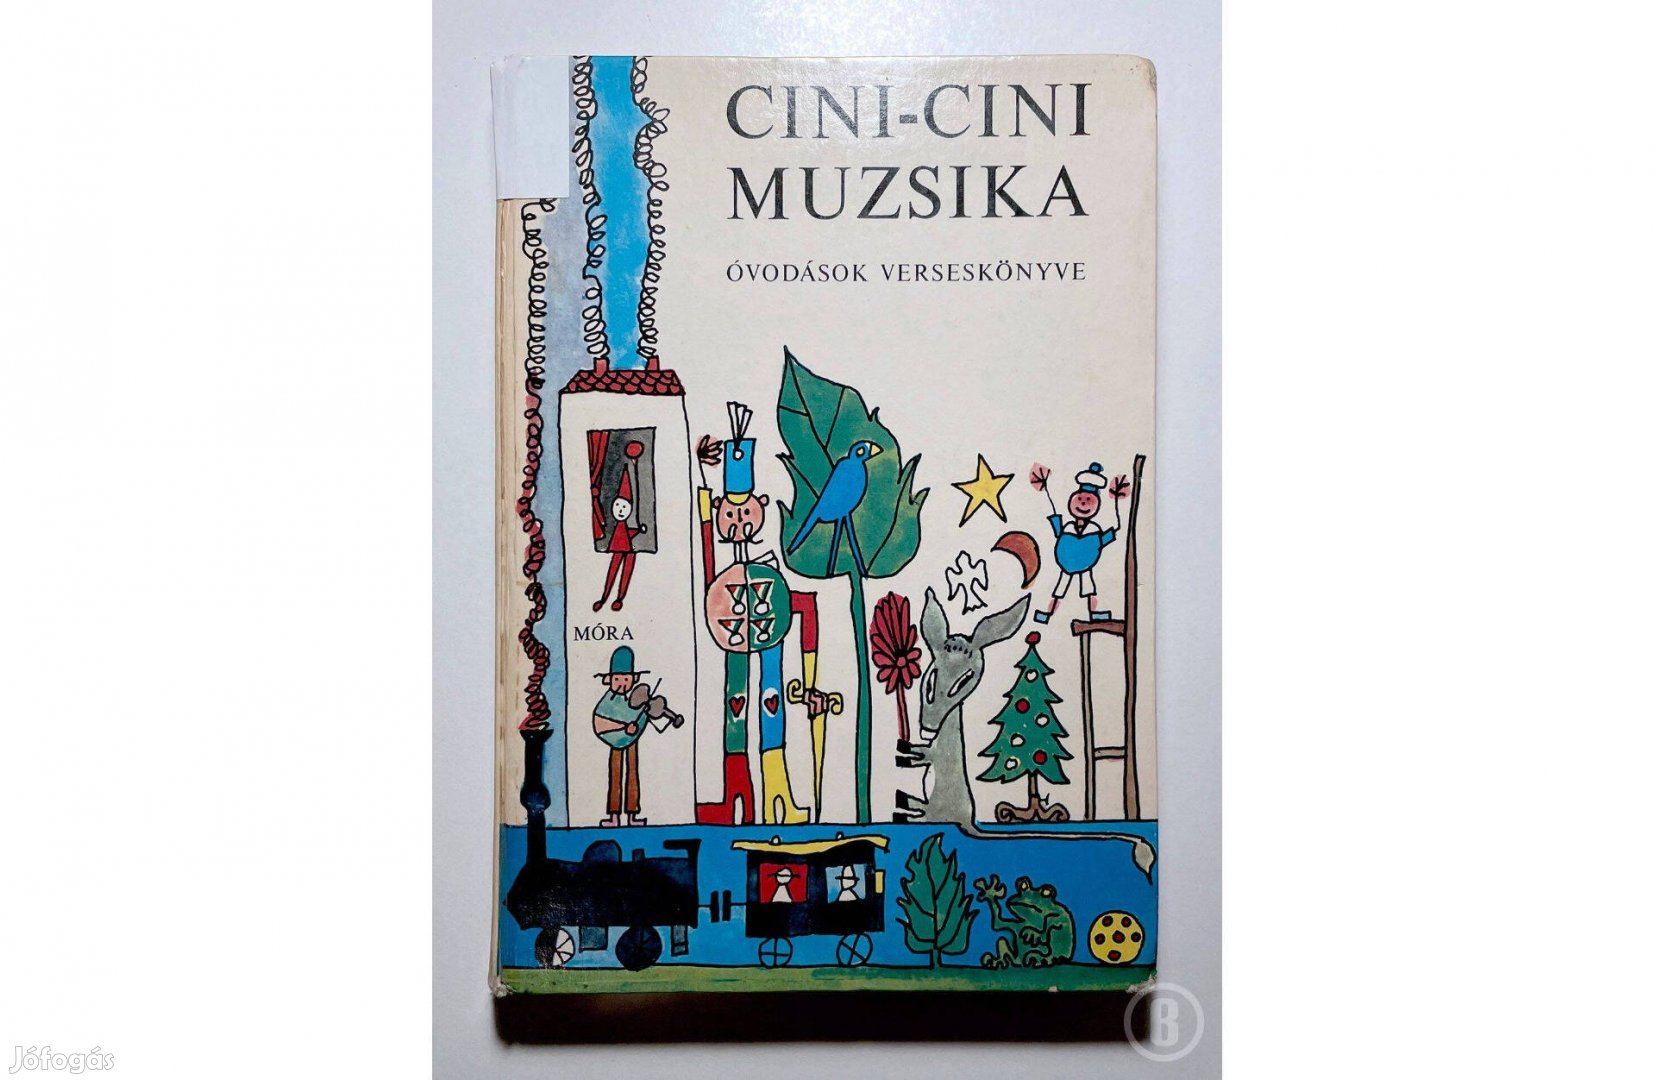 Cini-cini muzsika - Óvodások verseskönyve /ill. Bálint Endre